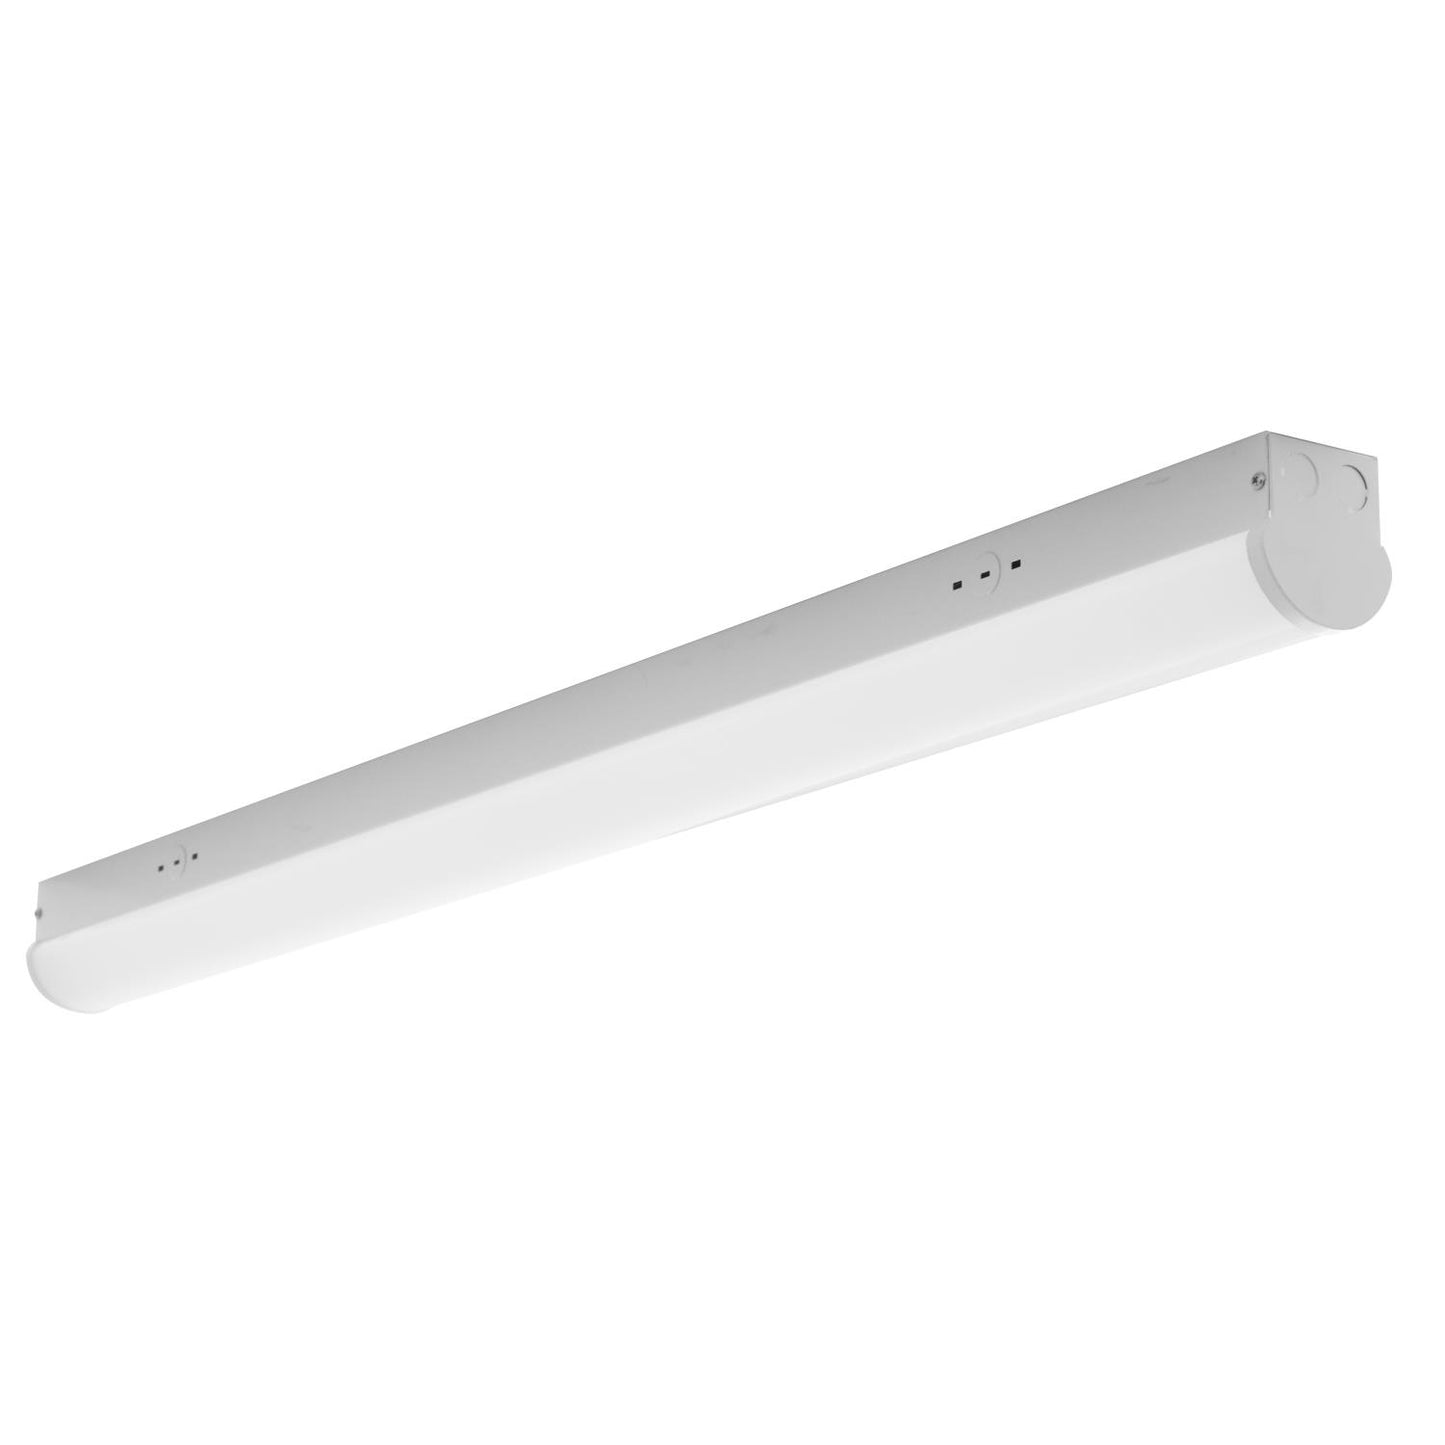 Sunlite 85365 8 ft. LED Garage Linear Wraparound Strip Lighting Fixture, Ceiling Flush Mount, 75 Watt, 3500K - Neutral White